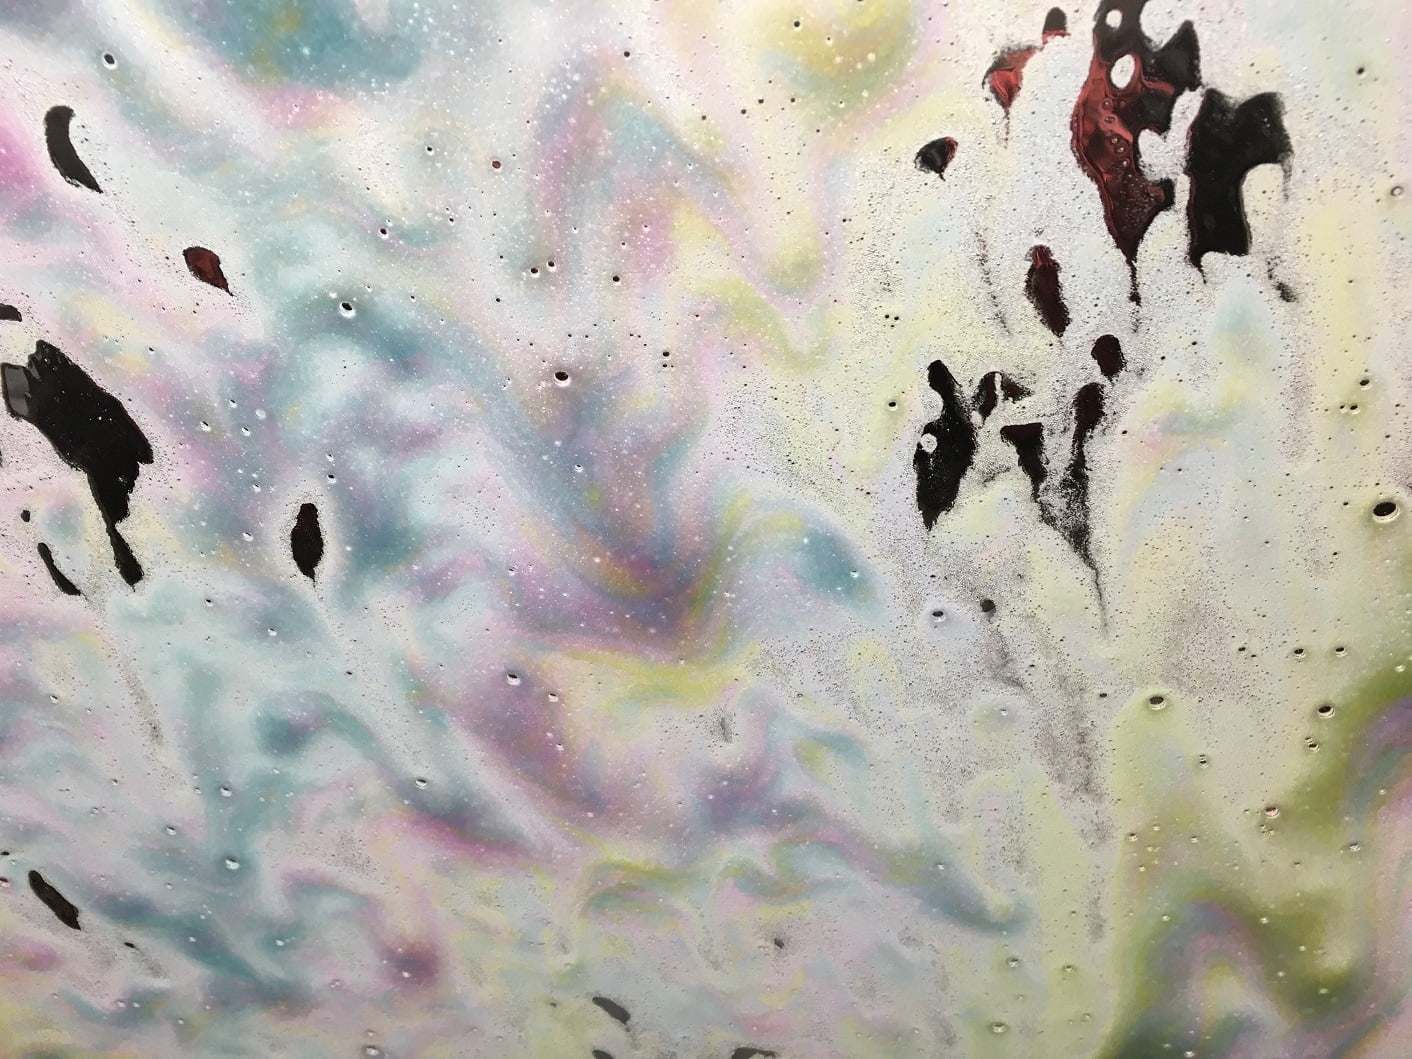 tri-color carwash foam on windshield